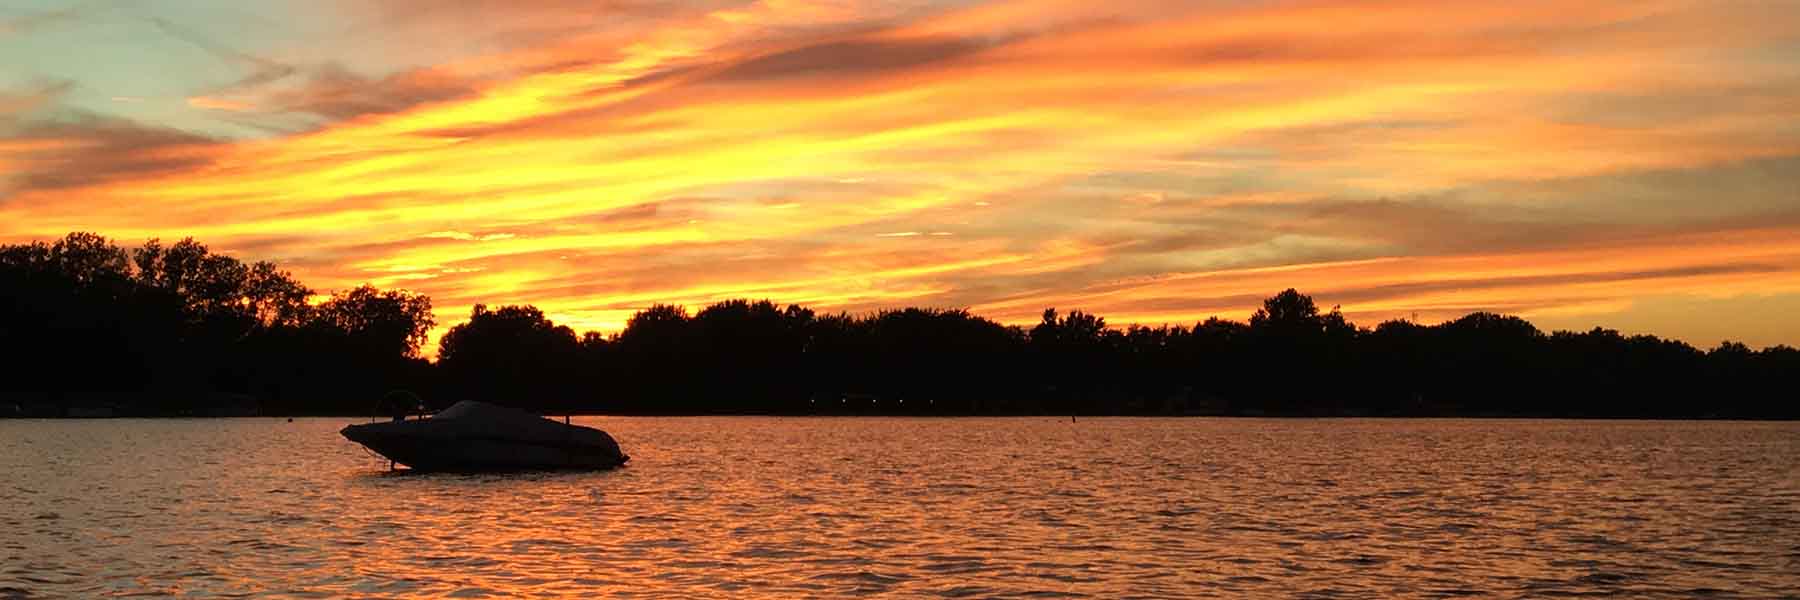 Summer sunset at a lake